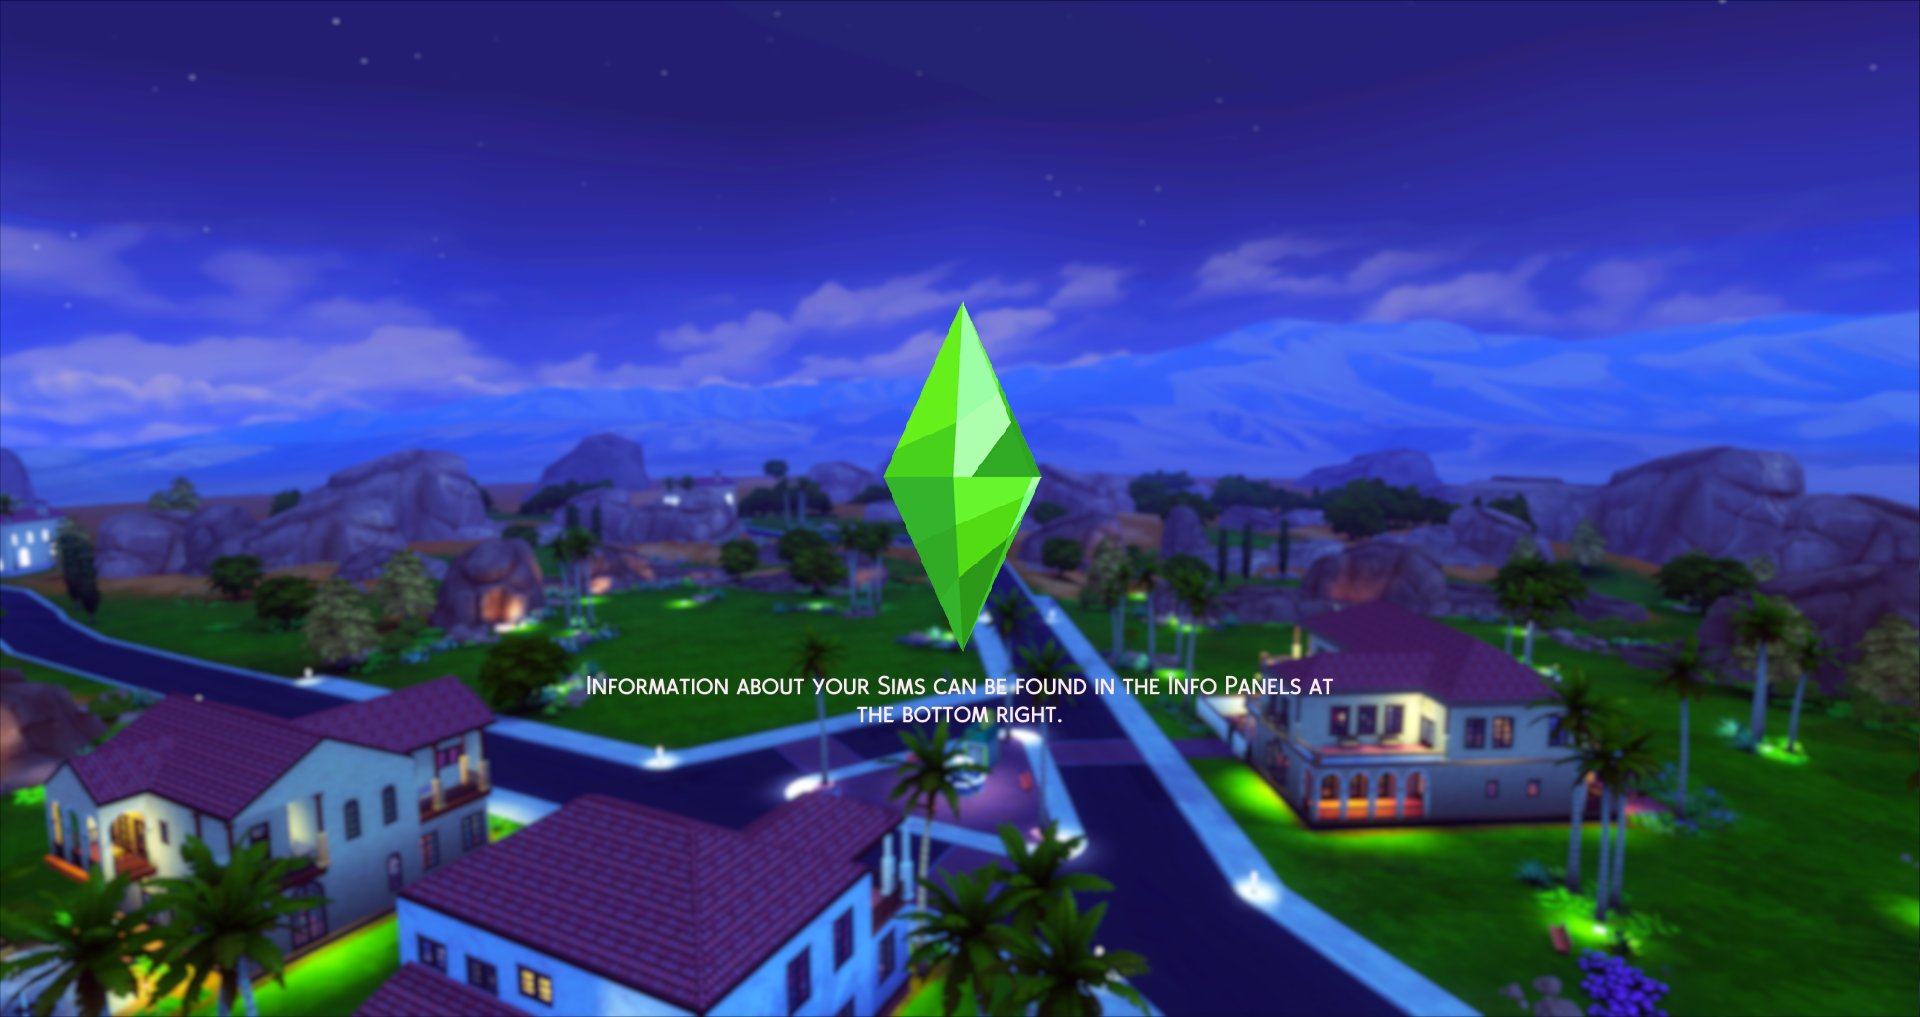 Sims 4 loading screen. Симс 4 загрузочный экран. Красивый загрузочный экран симс 4. Симс 4 загрузочный экран мод. Симс экран загрузки с городом.